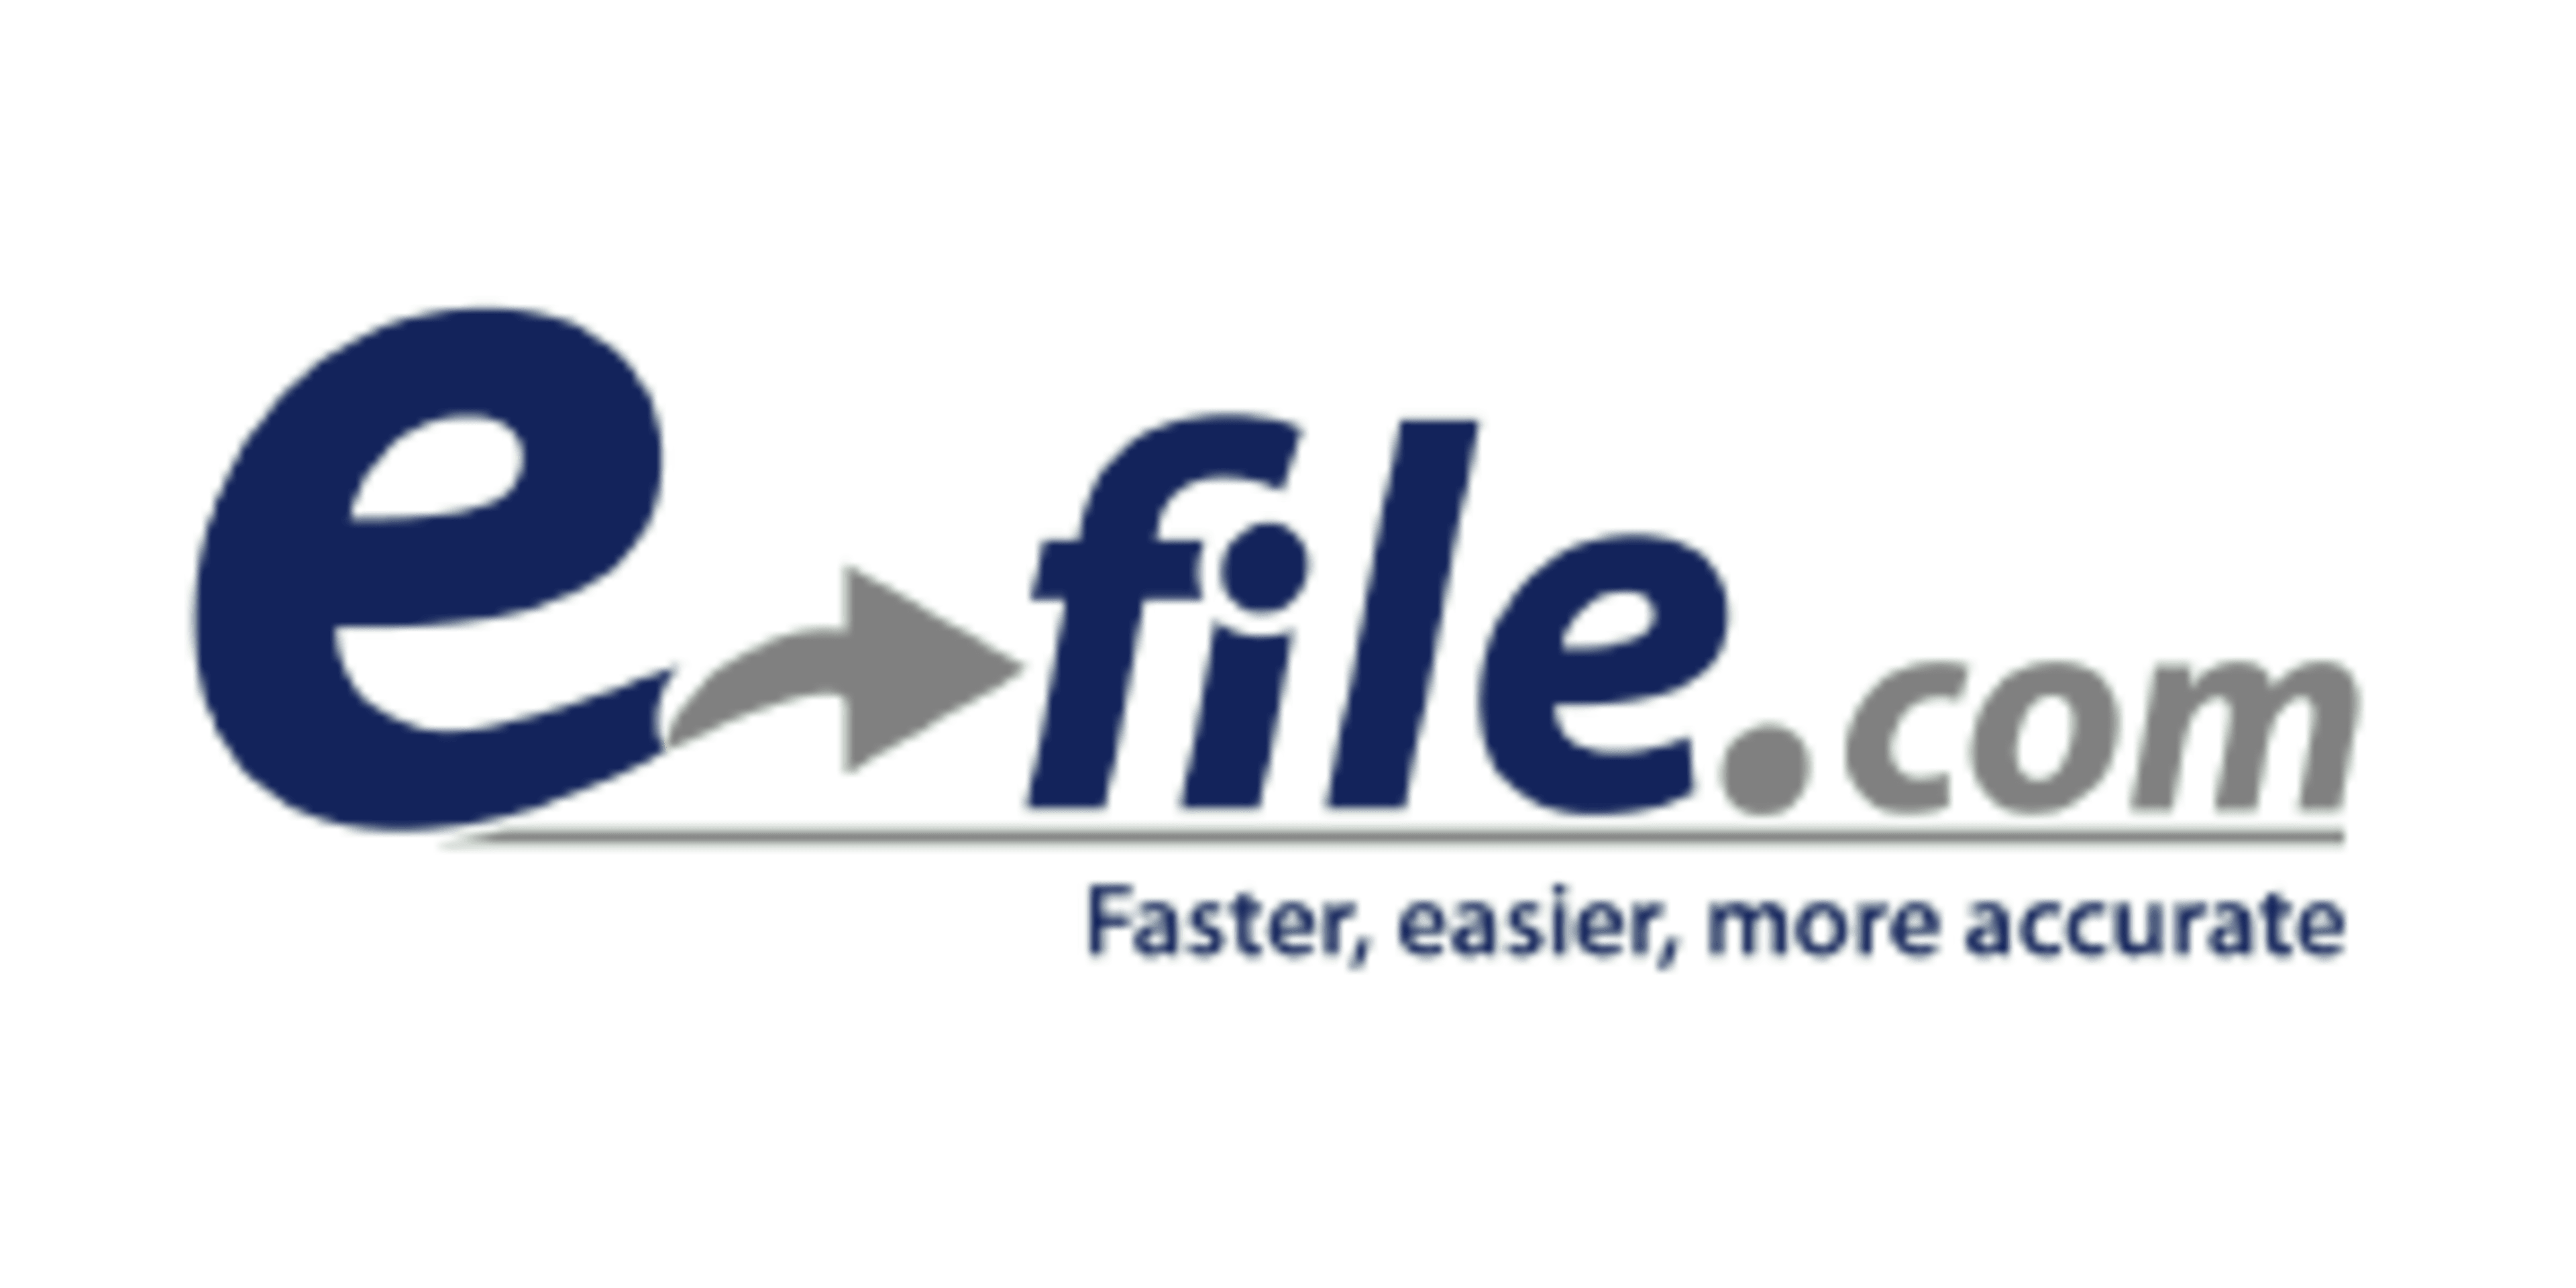 E-file.com Code